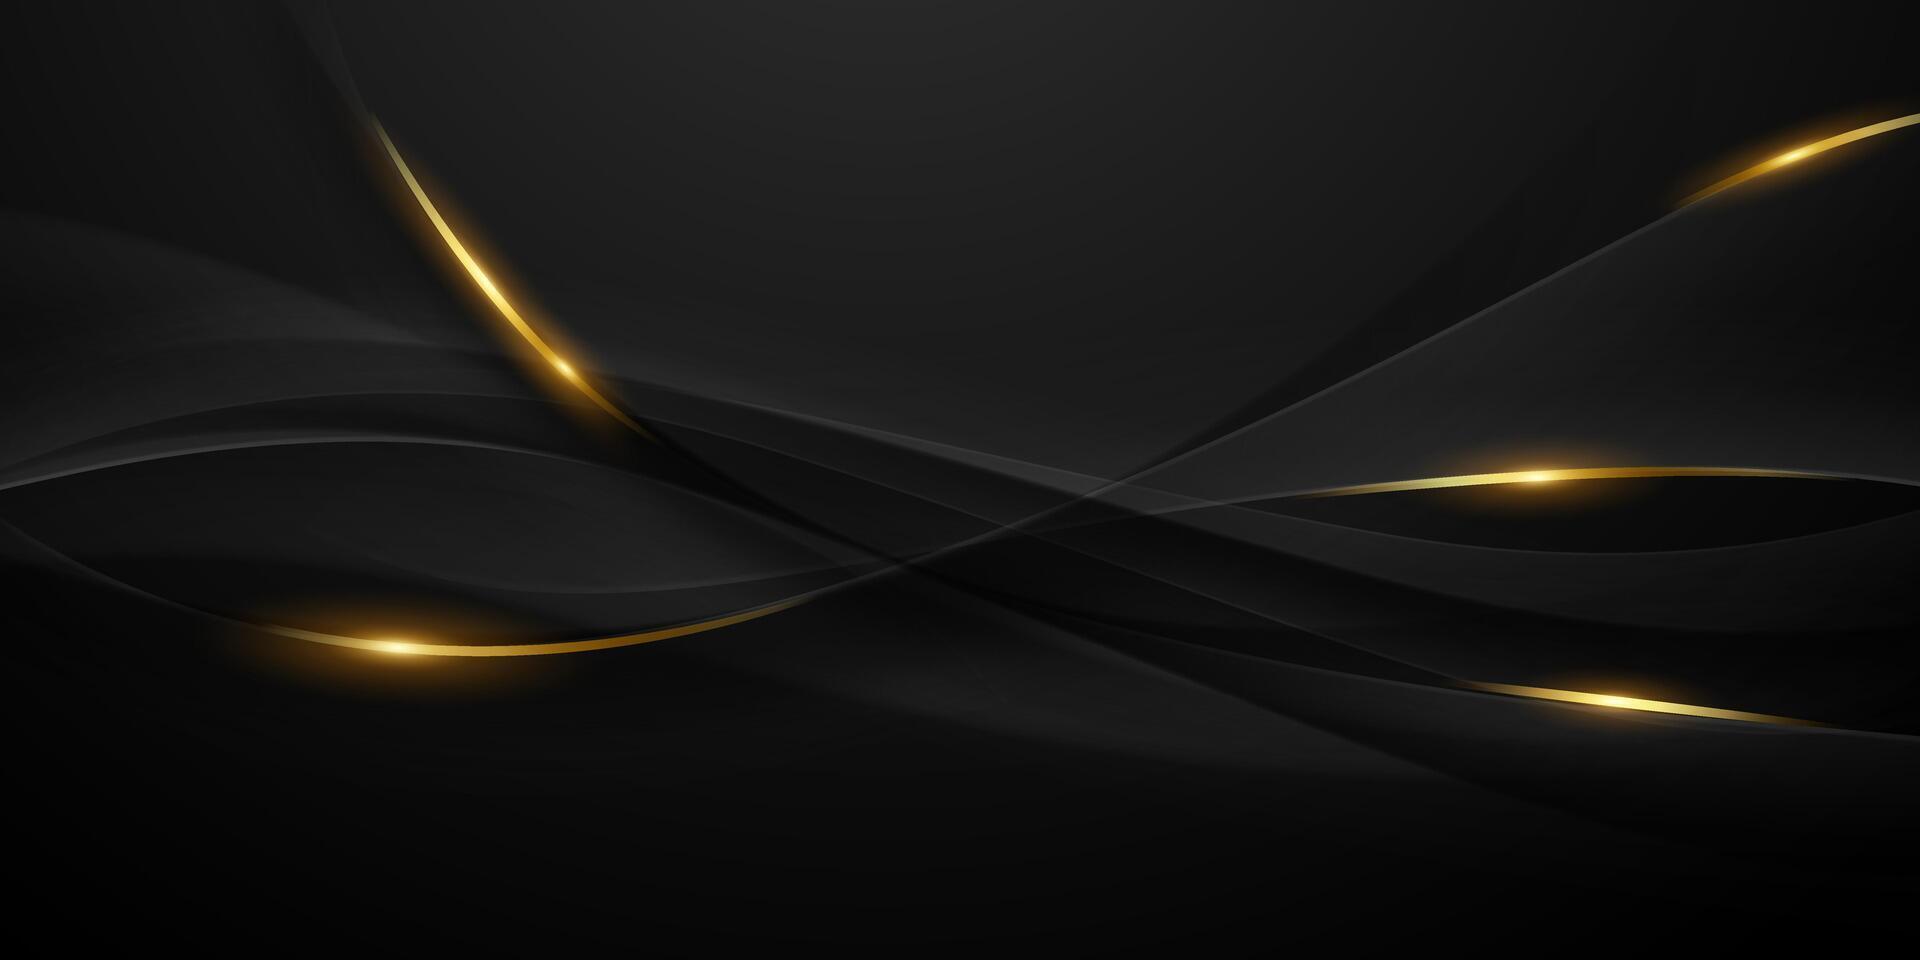 abstrakt modern Design schwarz Hintergrund mit Luxus golden Elemente Vektor Illustration.